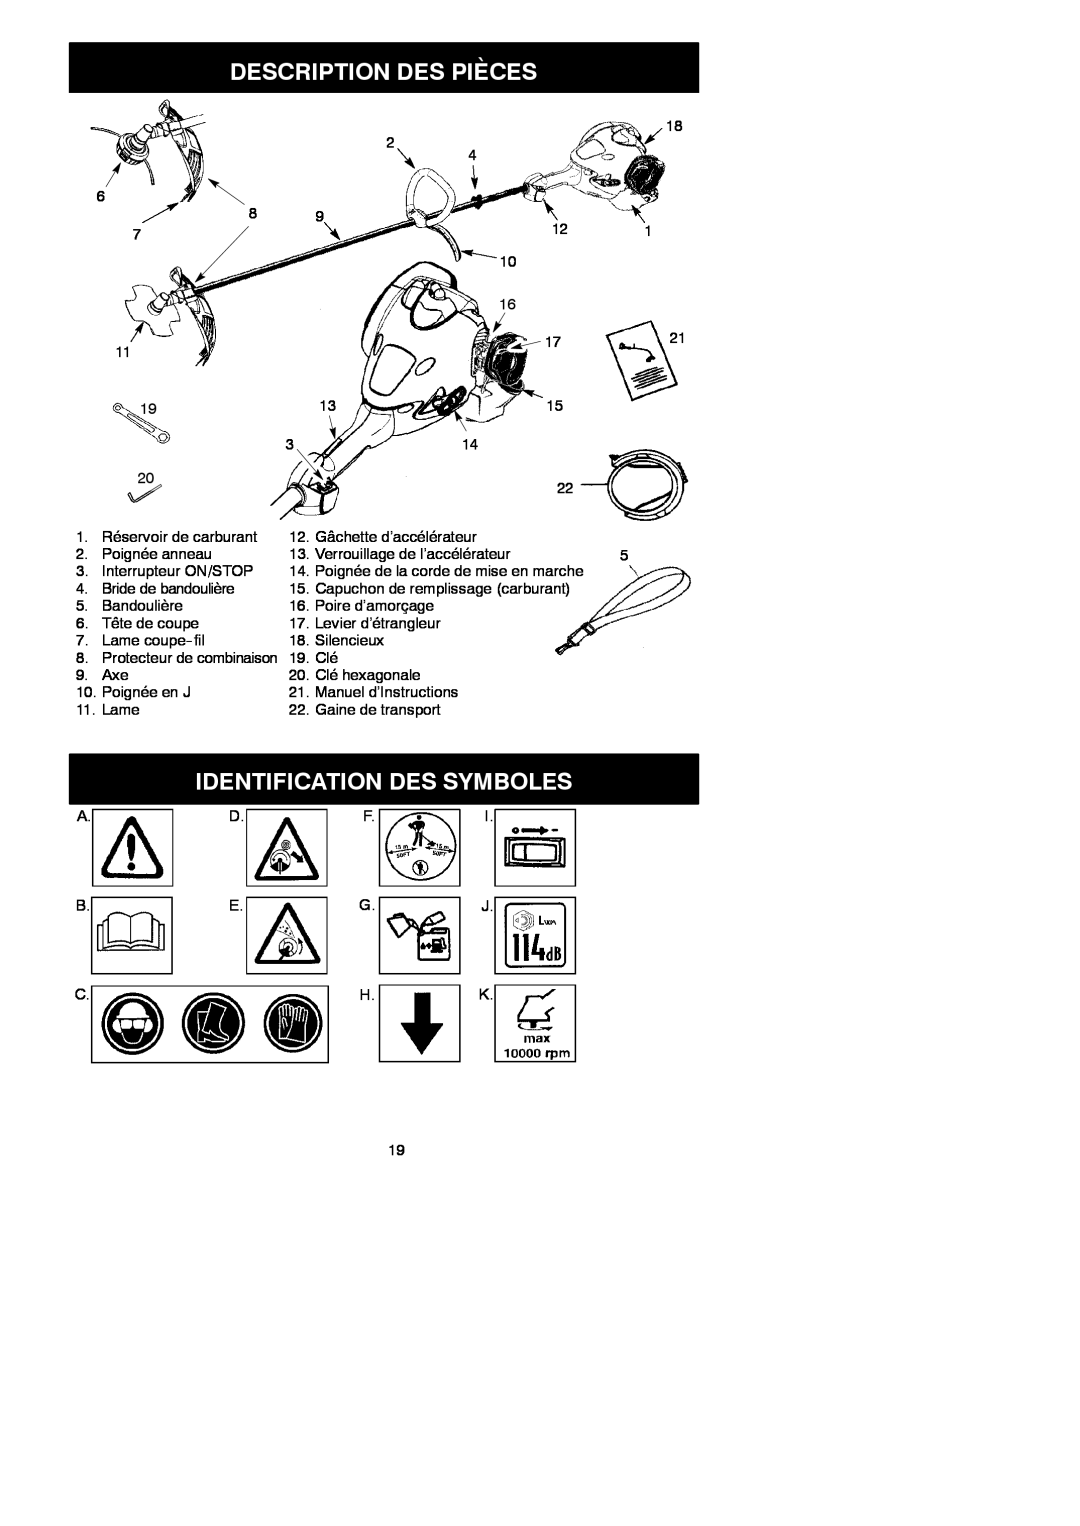 McCulloch MAC 250 L instruction manual Description Des Pièces, Identification Des Symboles 